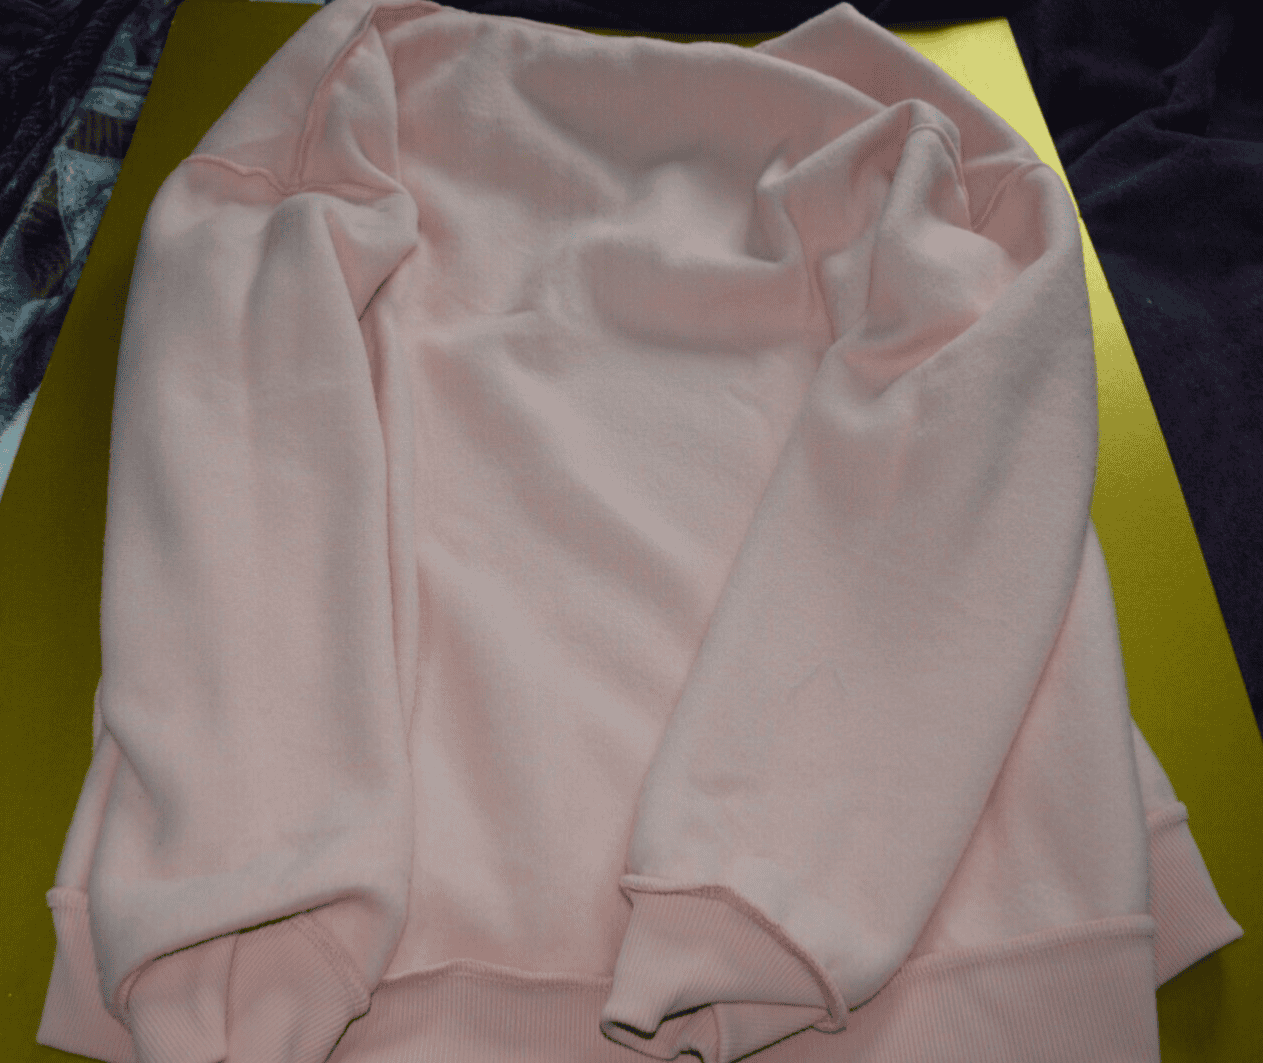 Fangjin Women's 1/4 Zip Sweatshirt - Pink